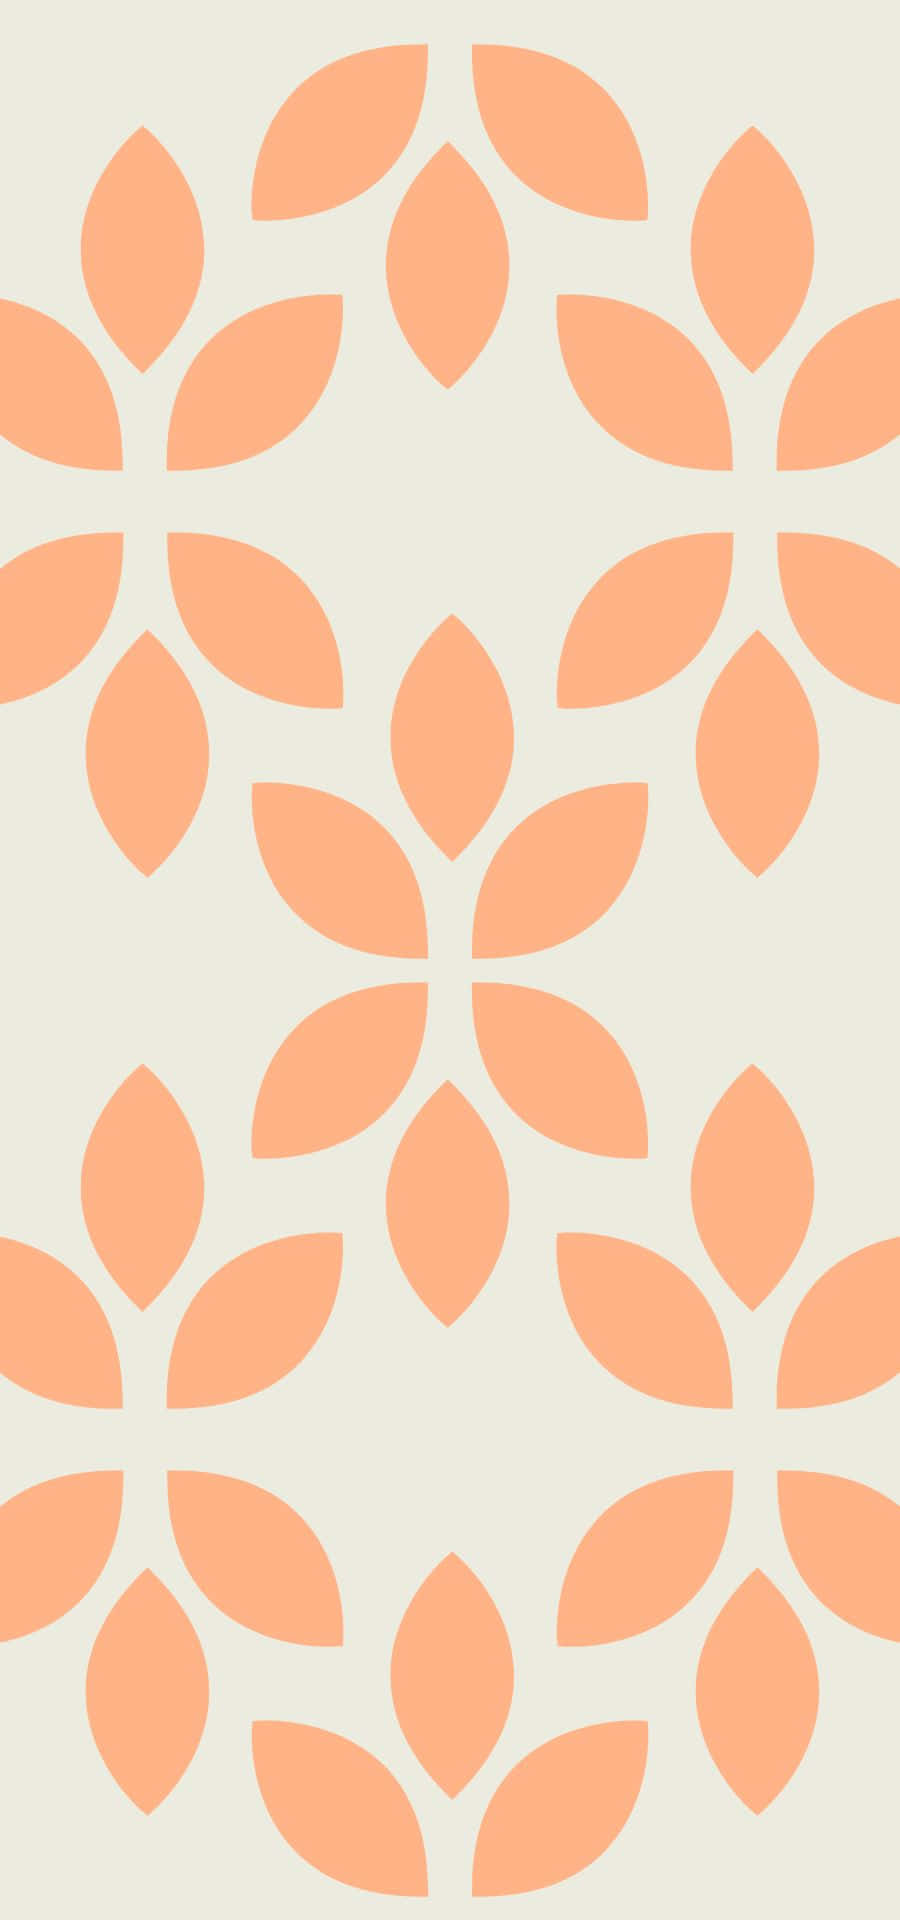 Et mønster af blade i en lys persillefarve